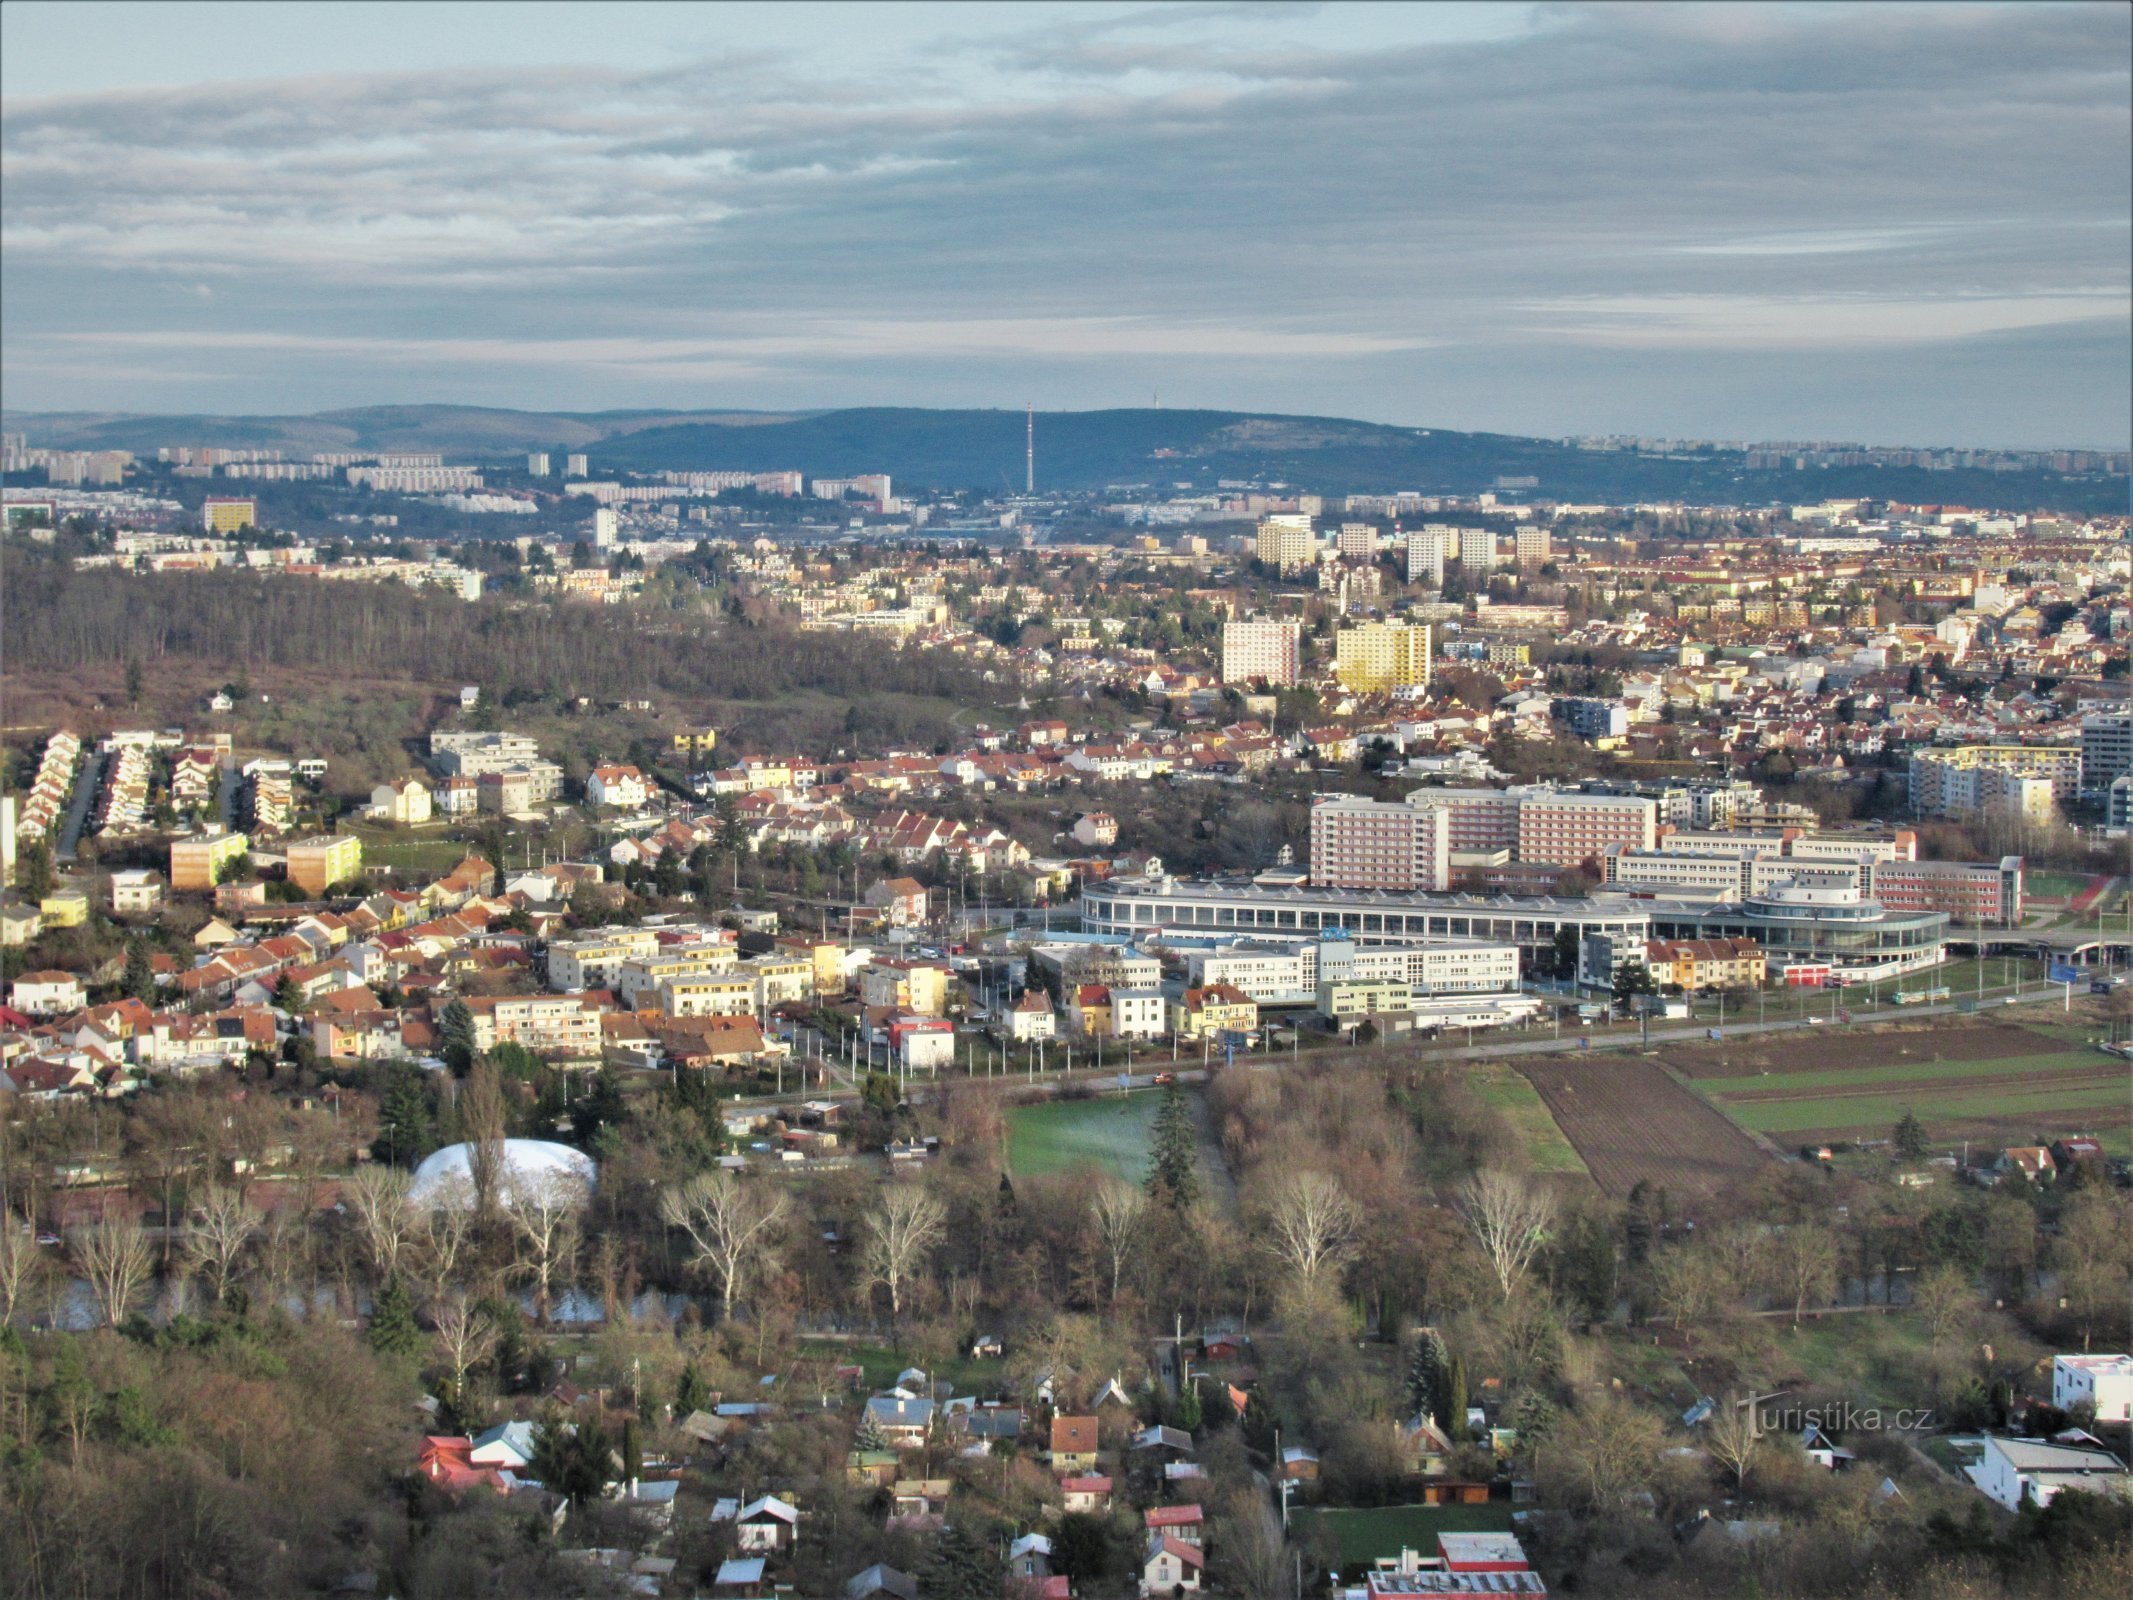 Widok z wieży widokowej na centralną część miasta